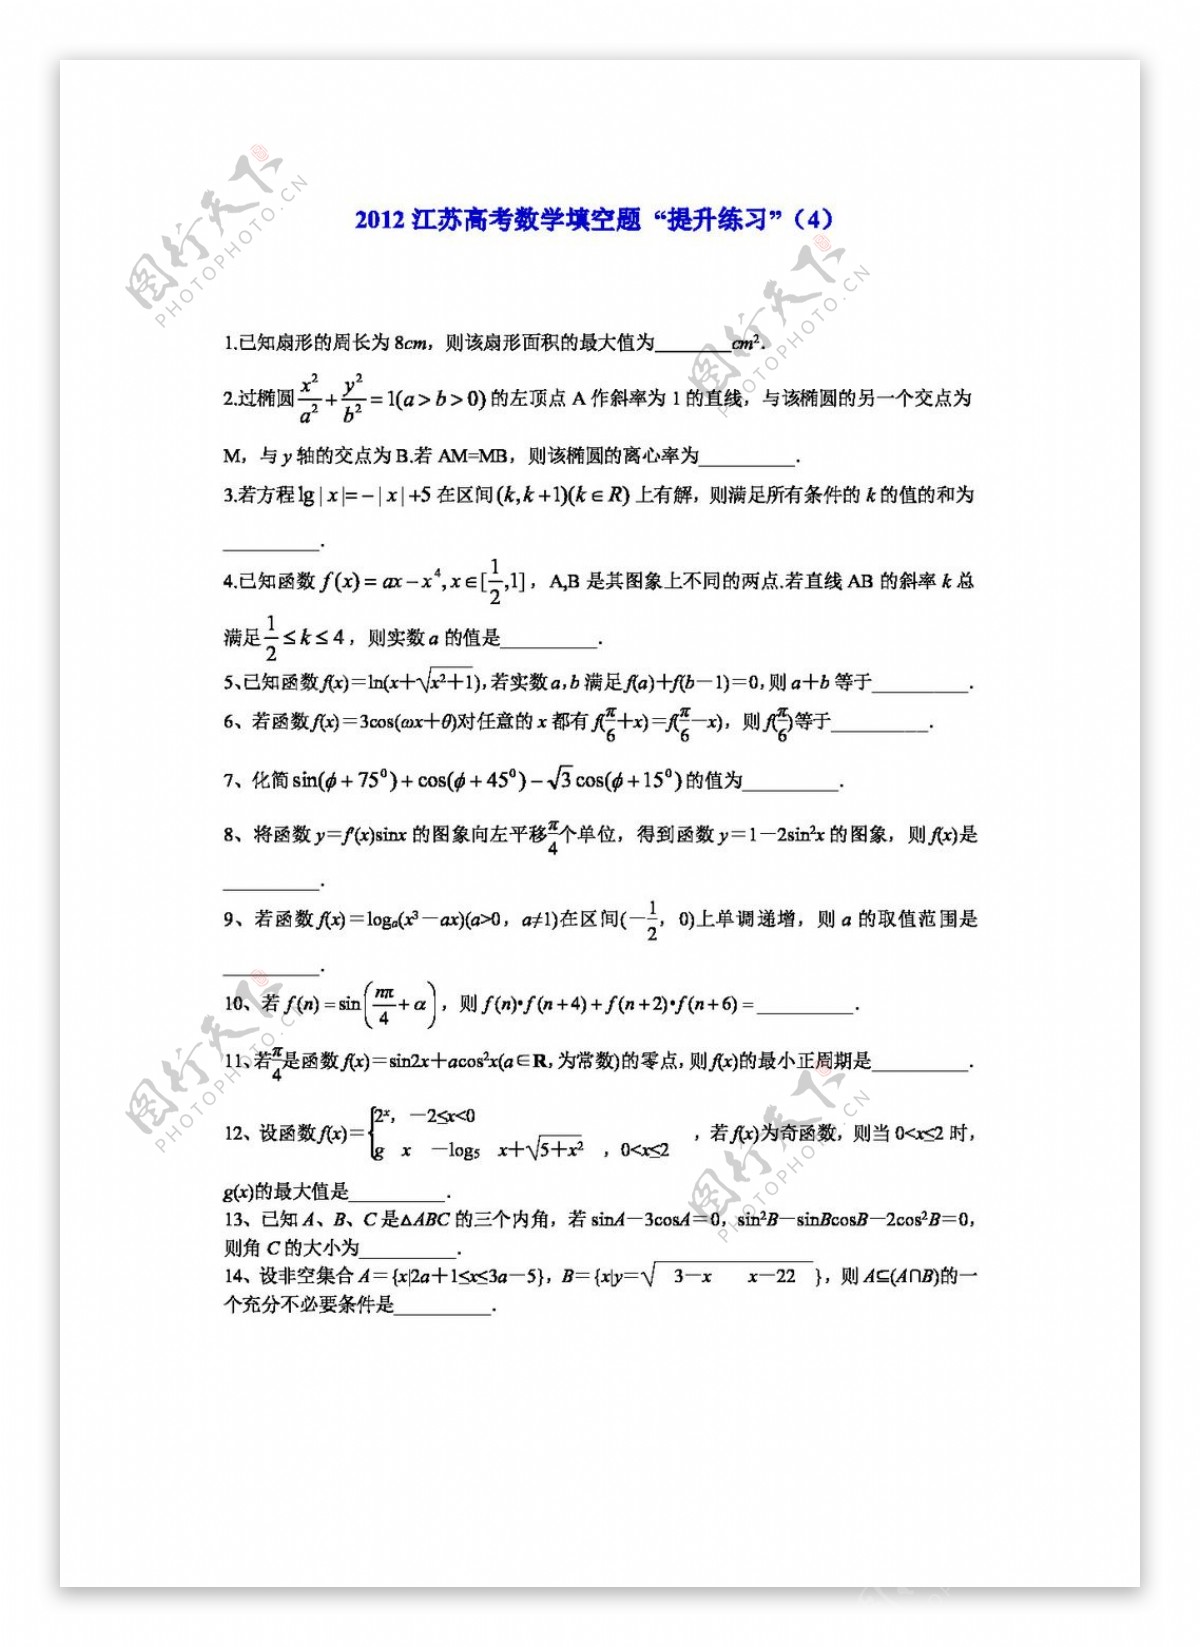 数学苏教版2012江苏高考数学填空题提升练习11份打包